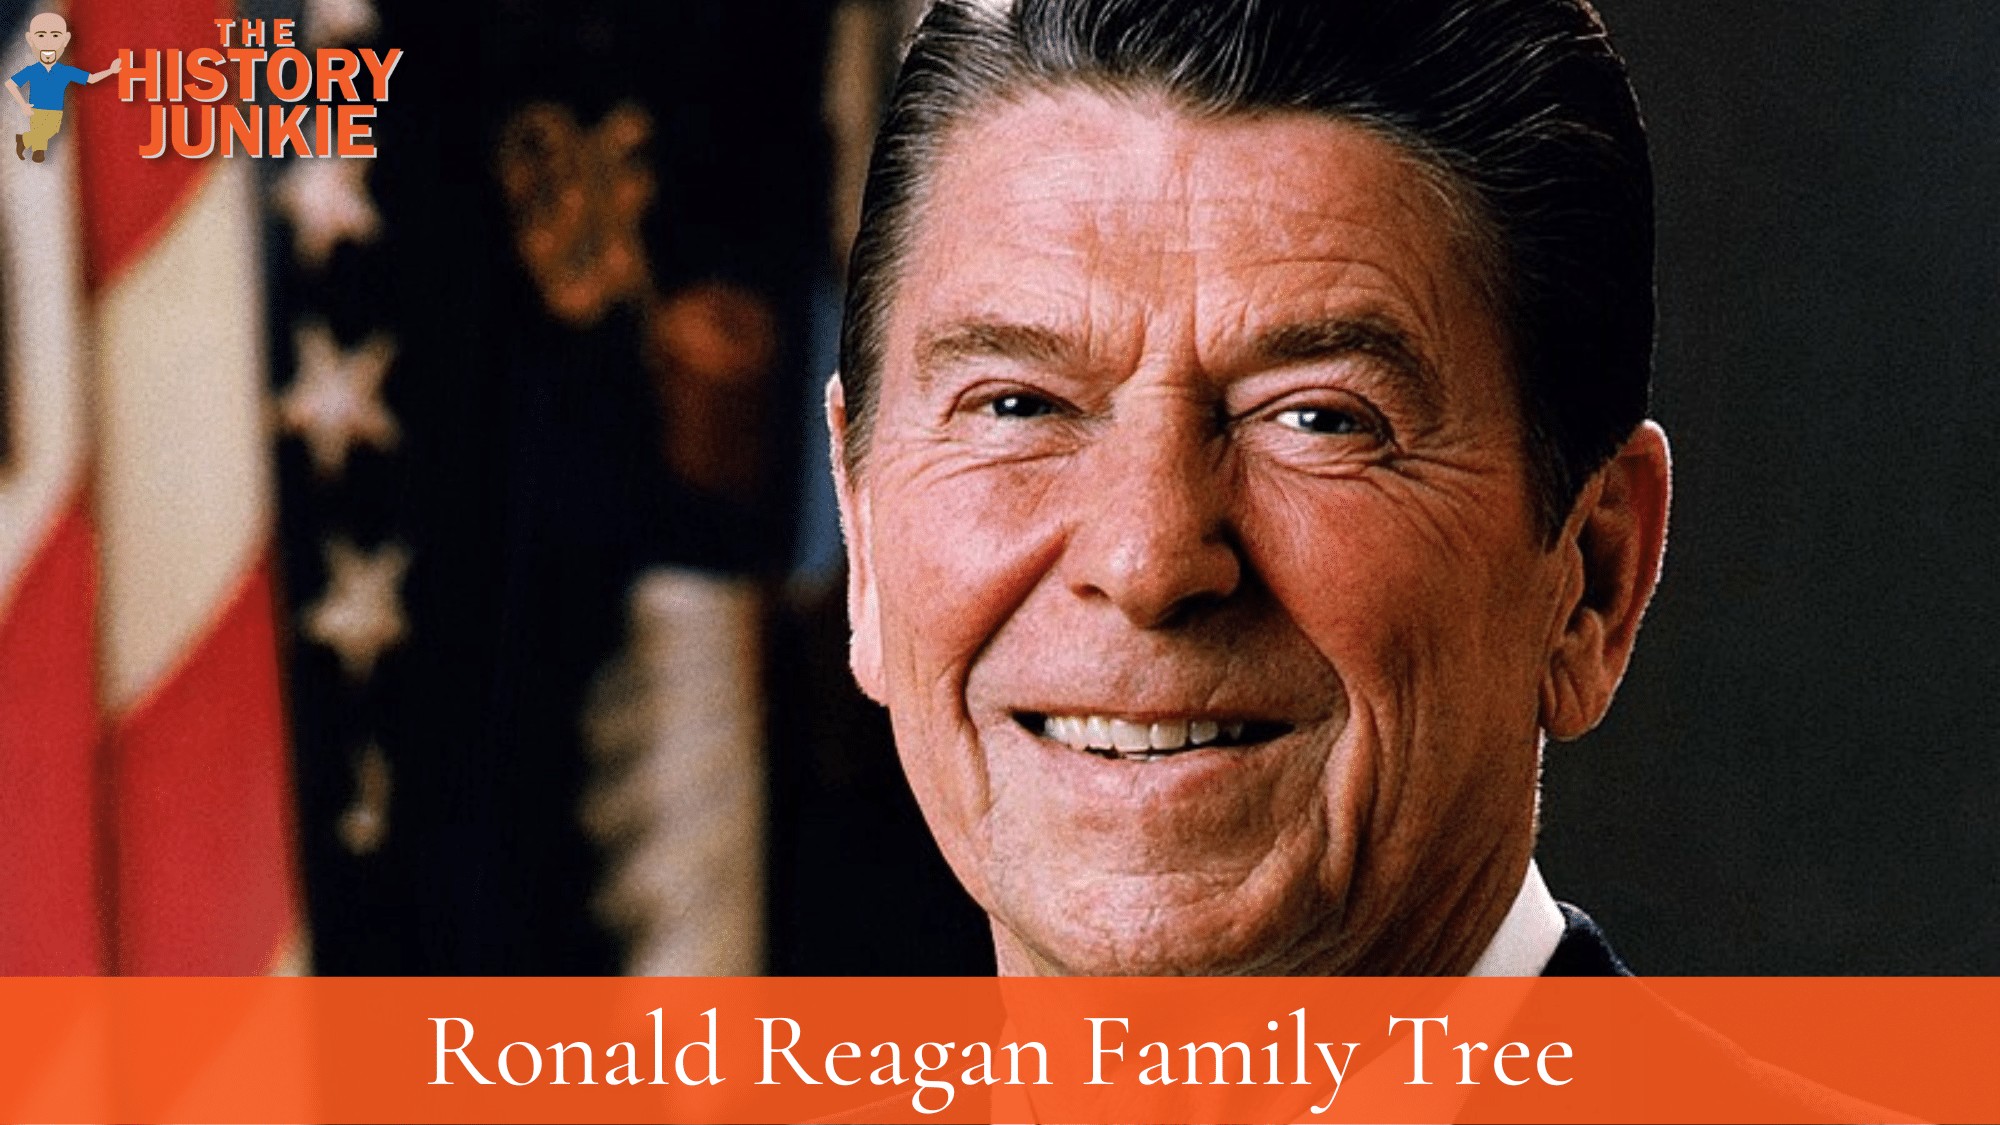 Ronald Reagan Family Tree